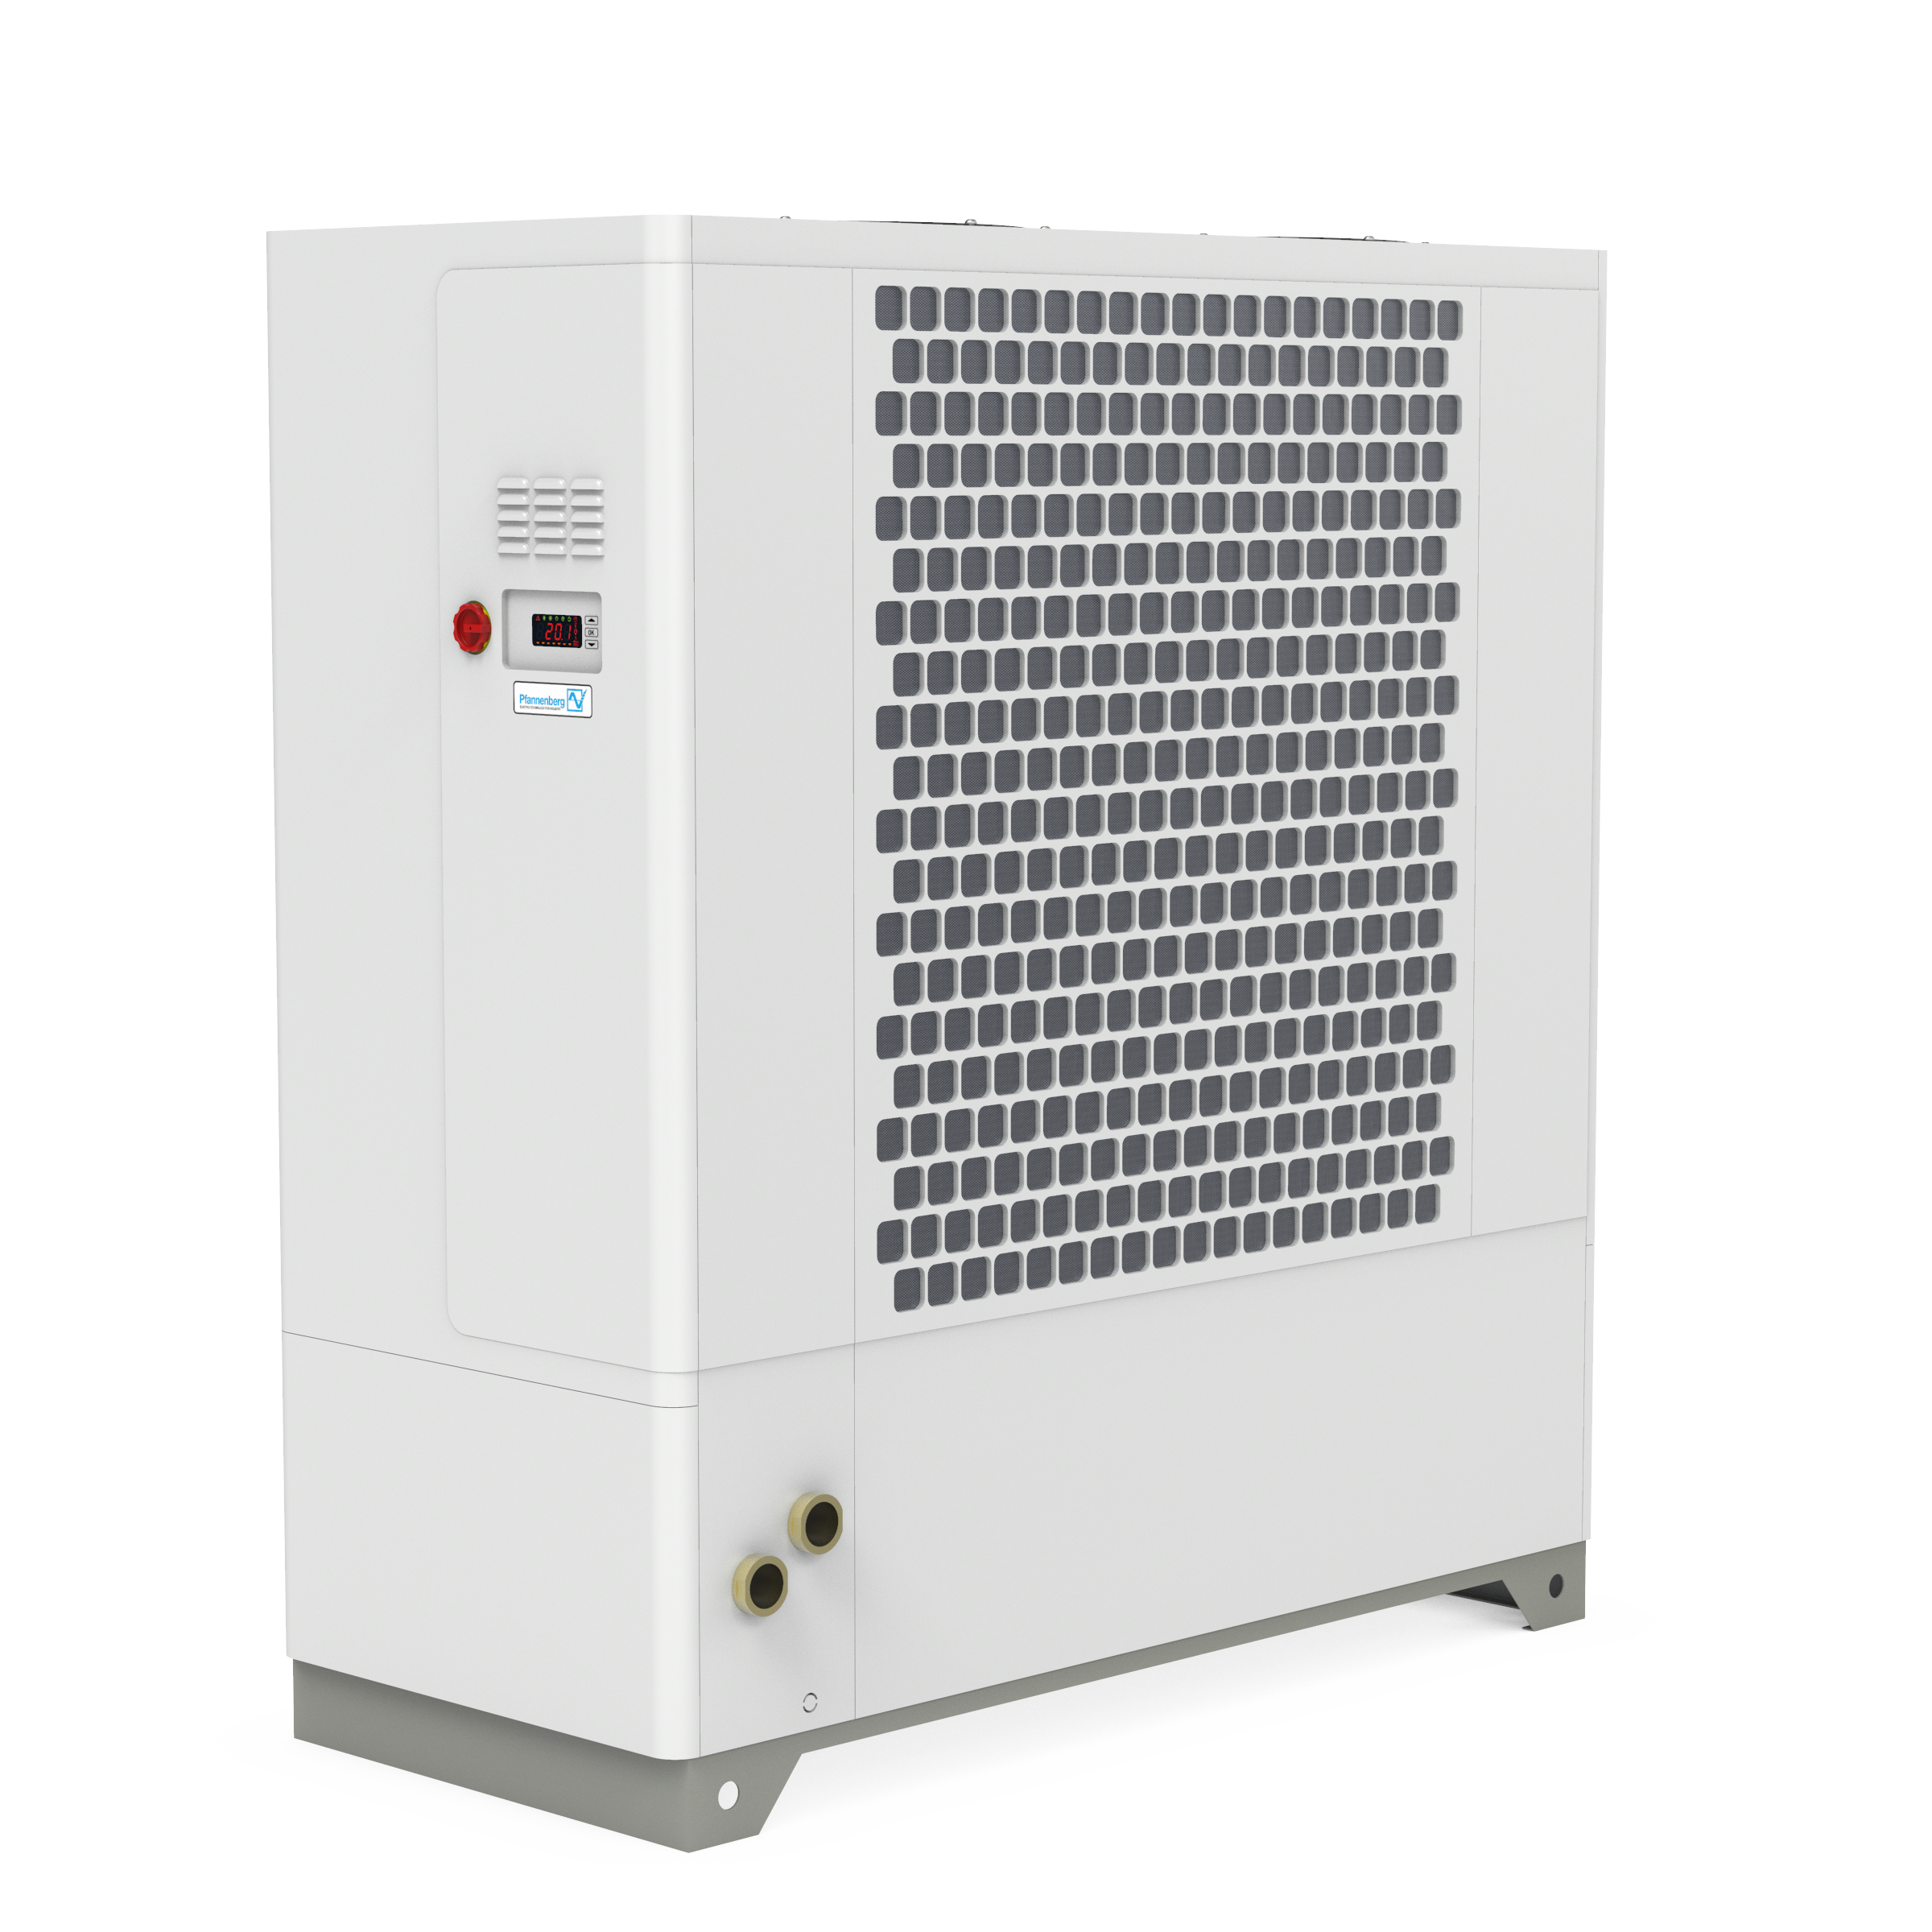 EBXT 800 Air-Cooled Active Liquid Cooler